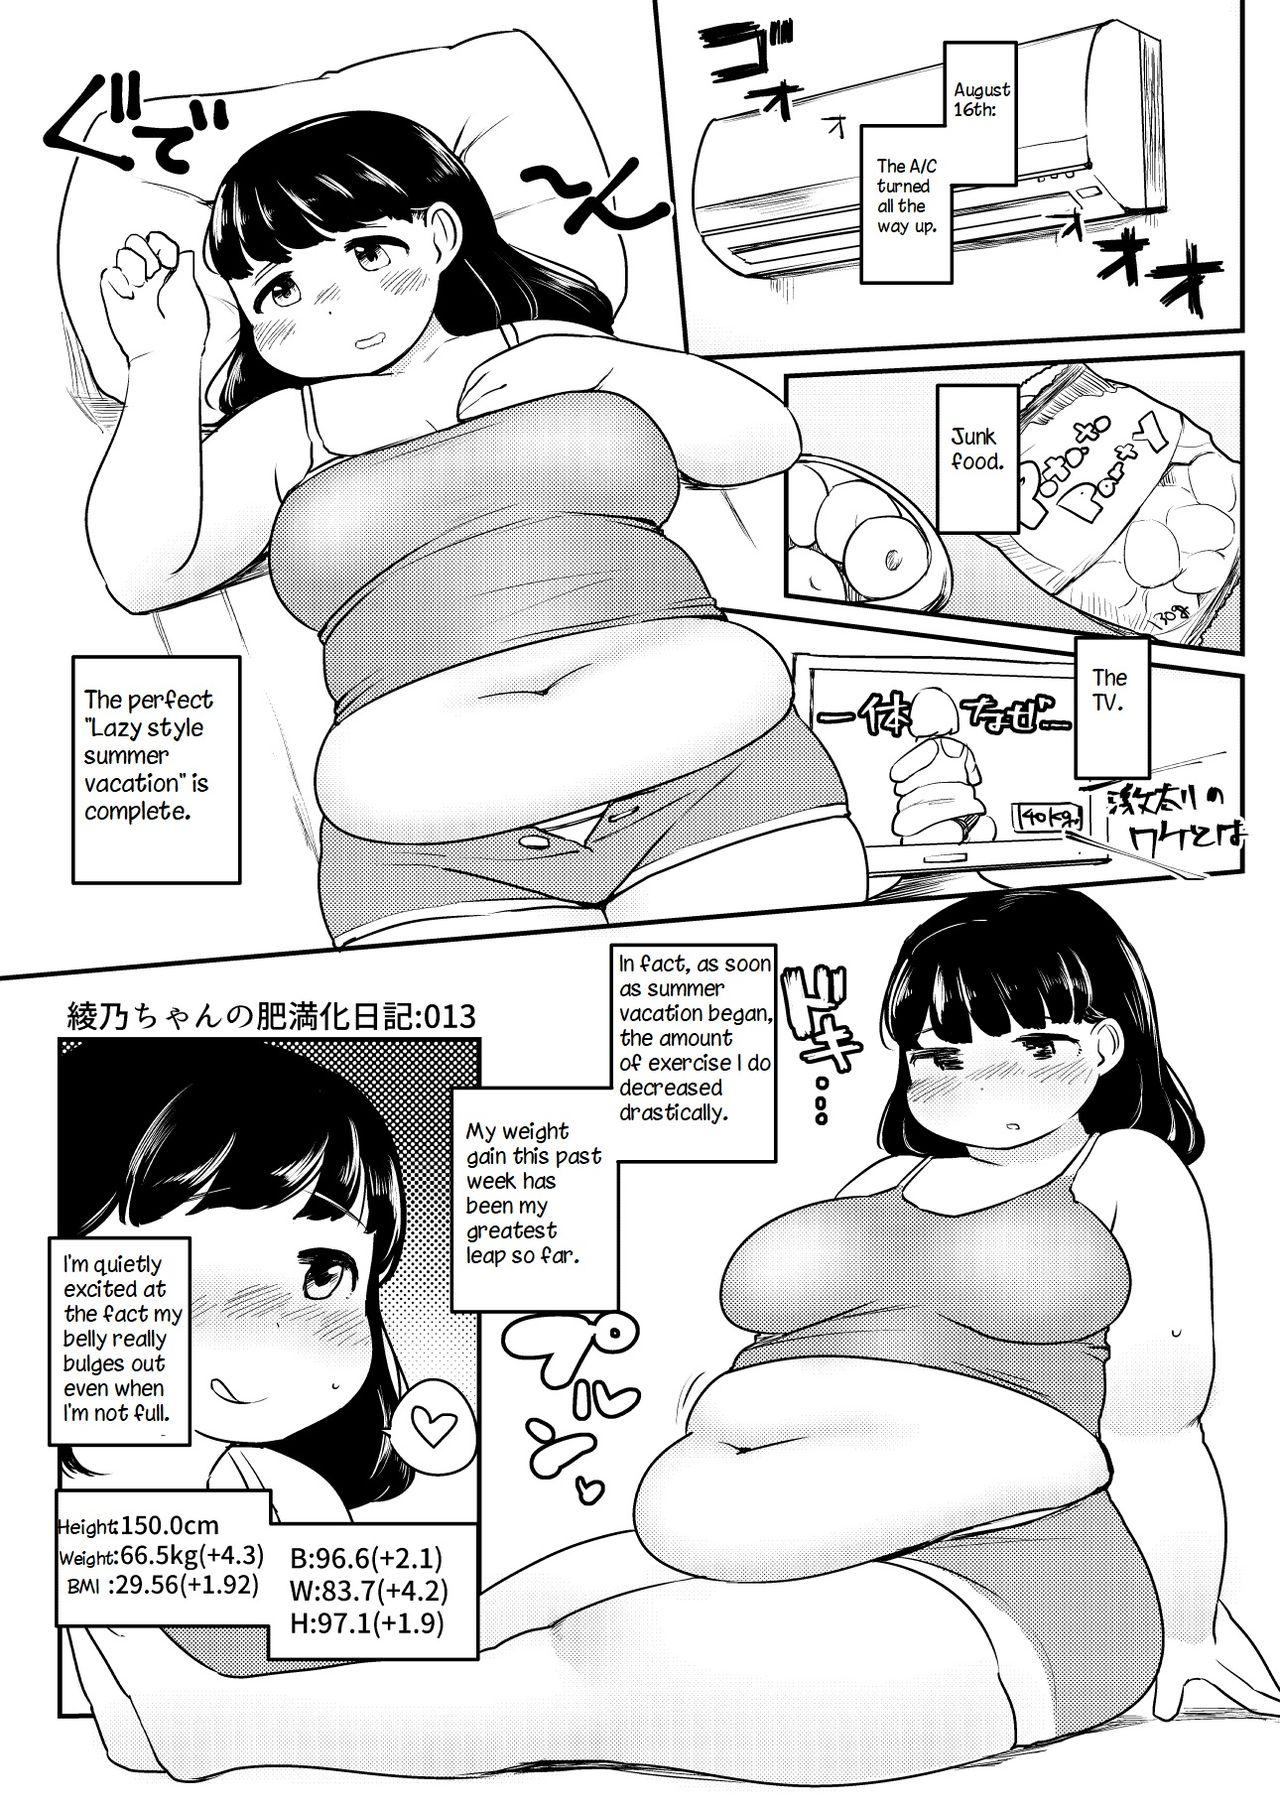 Ayano's Weight Gain Diary 12